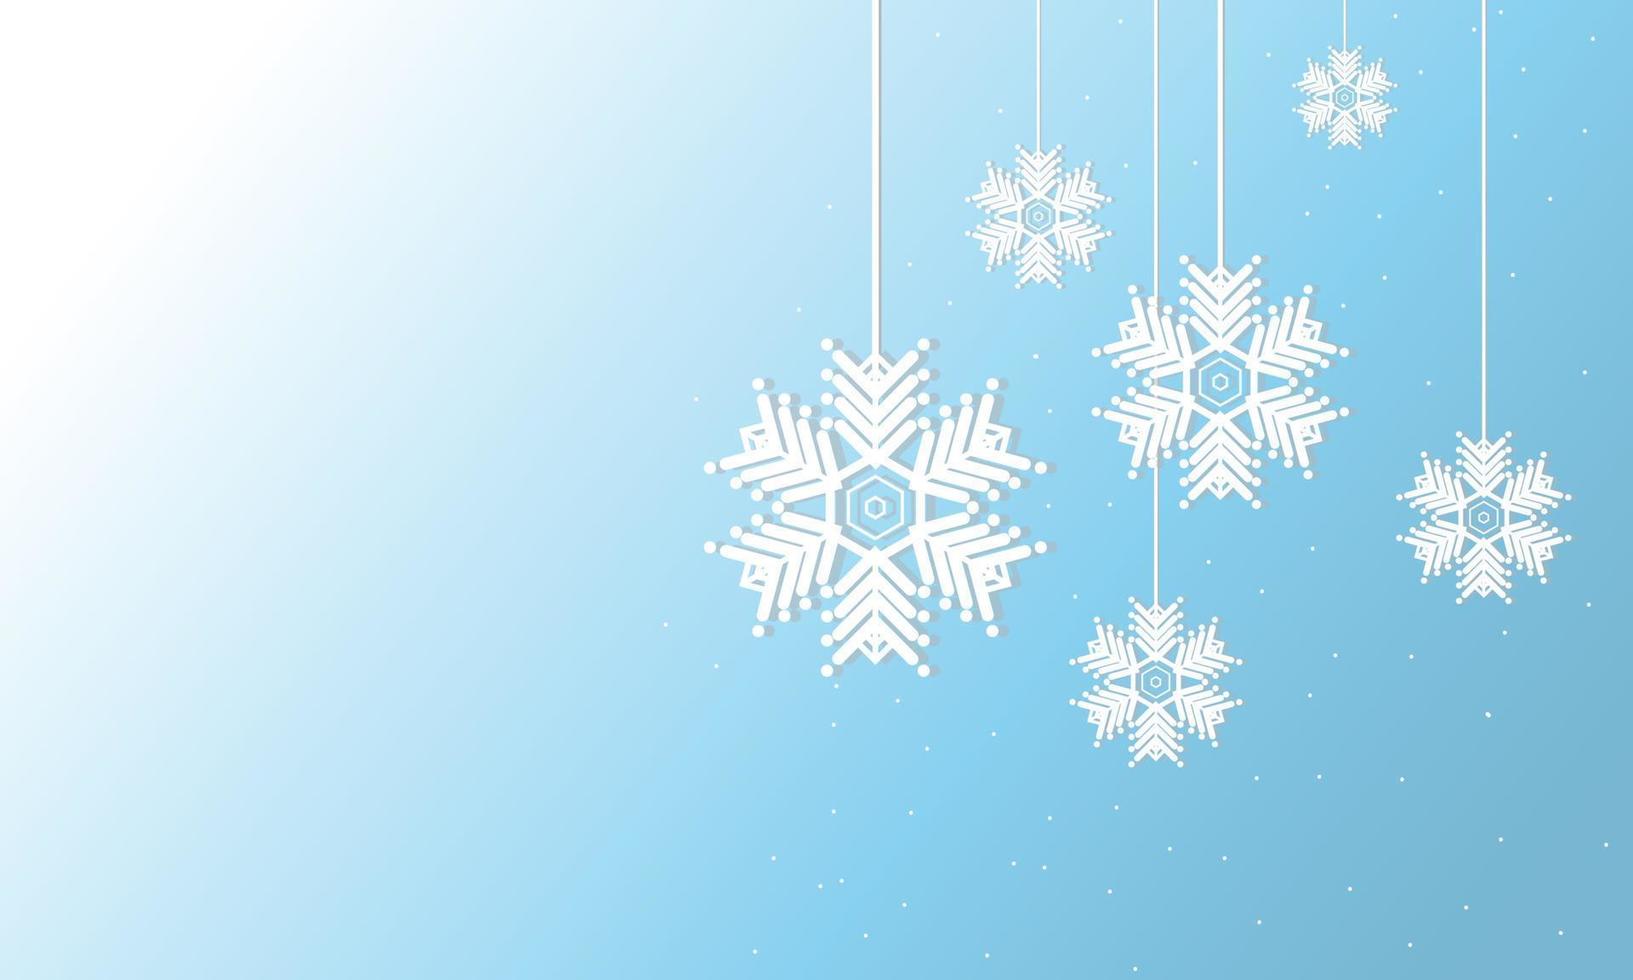 fond de vecteur d'hiver, flocons de neige suspendus, copie disponible pour la conception, utilisation comme fond d'écran ou carte de voeux, pour noël et nouvel an.